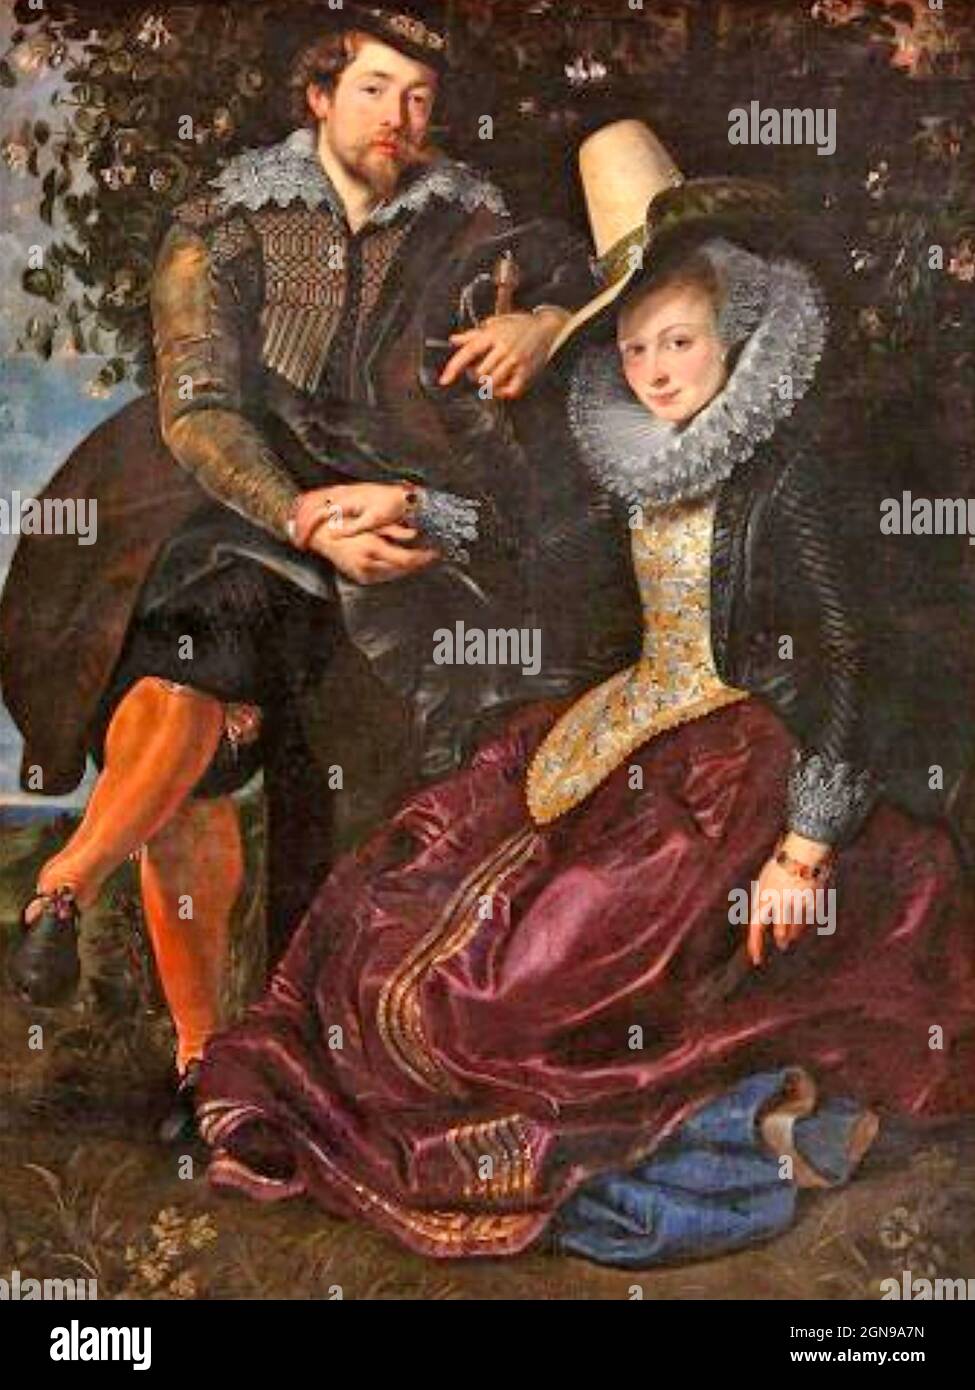 GEISSELMÄHER Selbstporträt über 1609 des flämischen Malers Peter Paul Rubens (1577-1640) und seiner ersten Frau Isabella Brent, gehalten in der Alten Pinakothek, Munch. Stockfoto